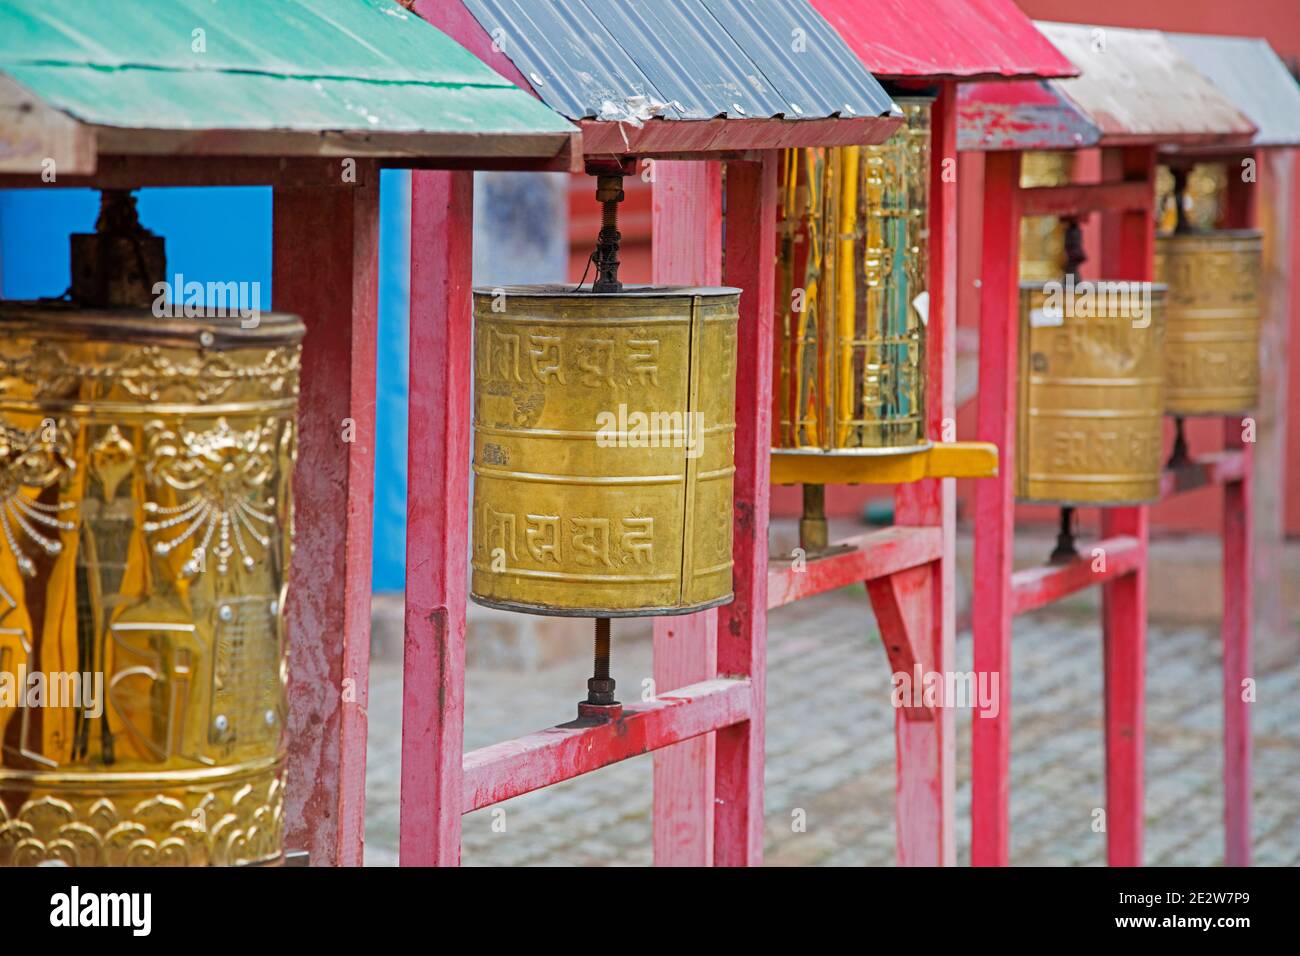 Kupferne Gebetsräder im Kloster Gandan / Gandantegchinlen, mongolisches buddhistisches Kloster in der Hauptstadt Ulaanbaatar / Ulan Bator, Mongolei Stockfoto